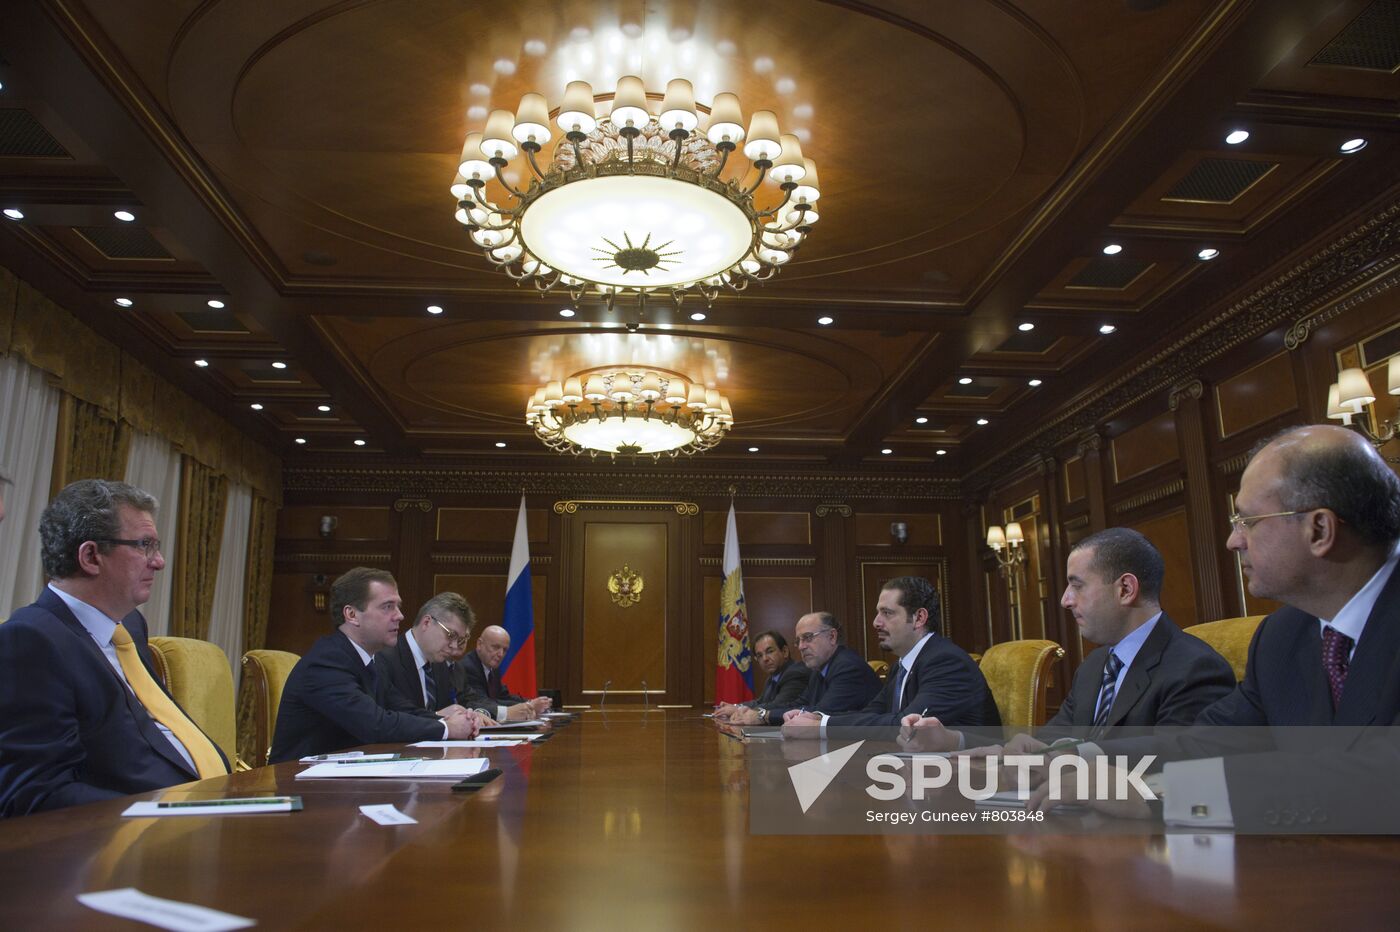 Dmitry Medvedev meets with Saad Hariri